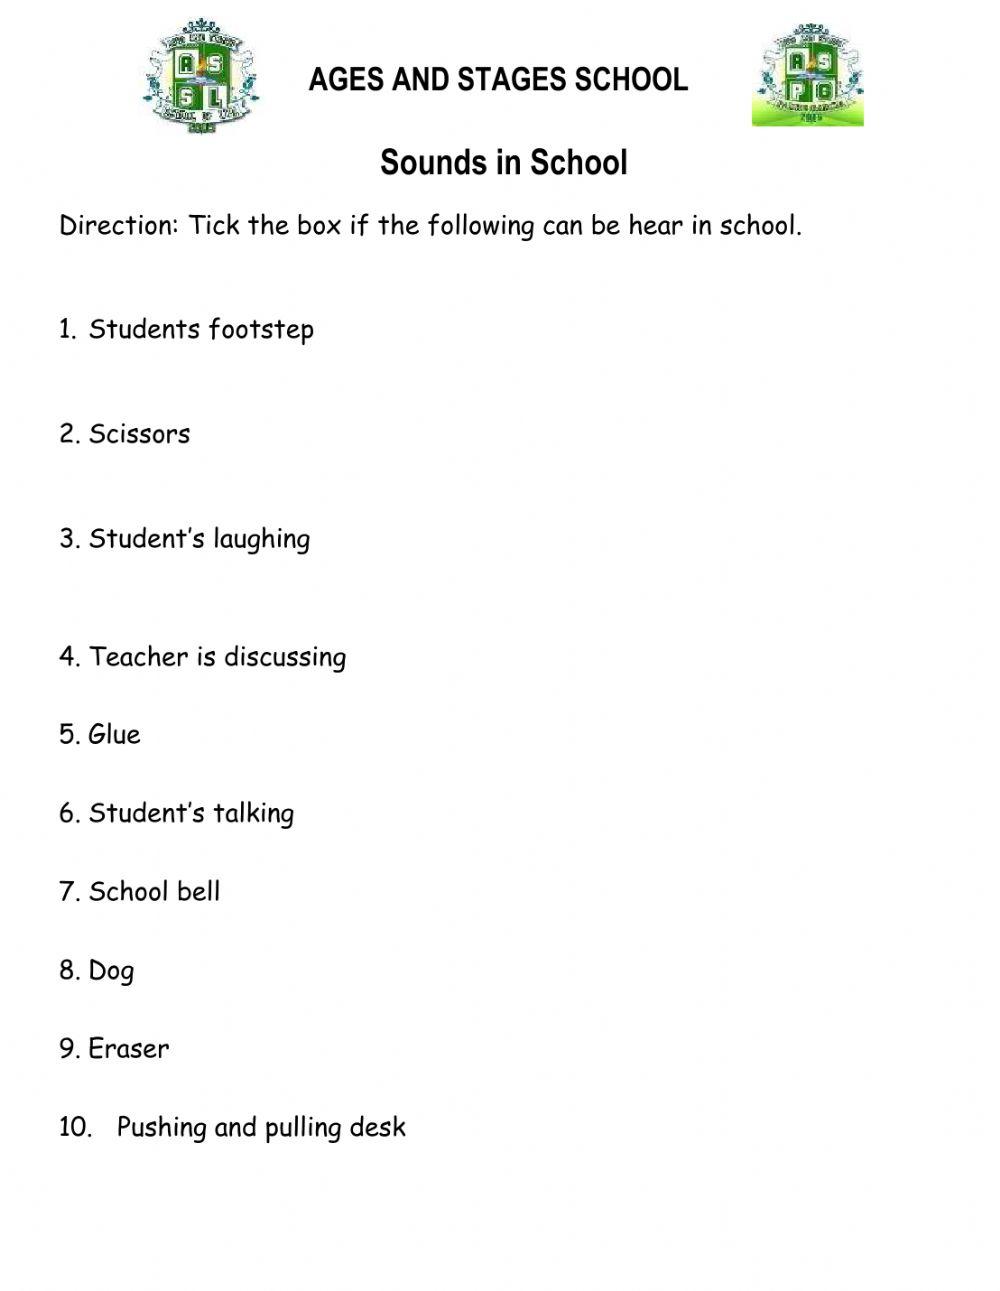 Sounds in school